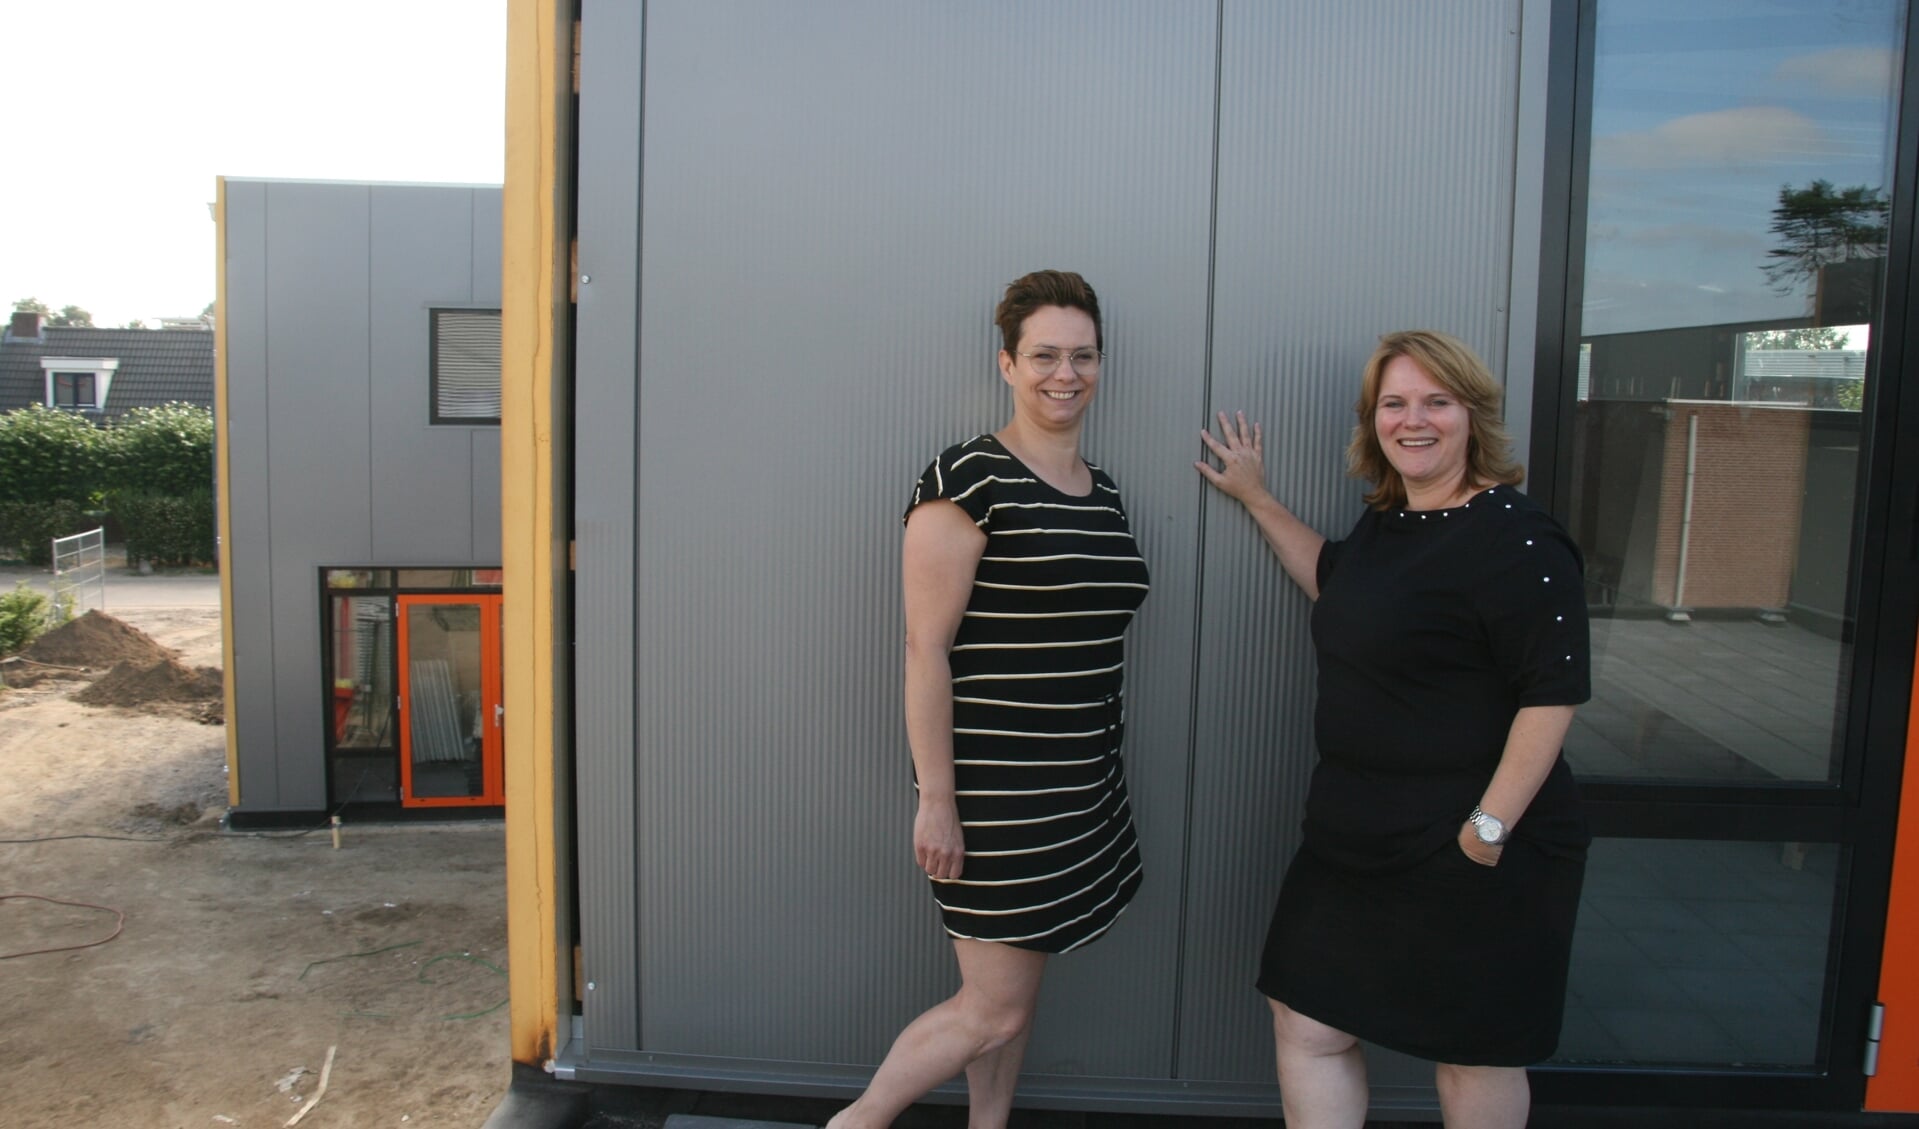 Chantal Spanjaard en Susan van Doren op het dakterras van de nieuwe BSO van Kinderopvang Eerste Klas in Cuijk. 'De nieuwbouw biedt ons veel nieuwe mogelijkheden.'